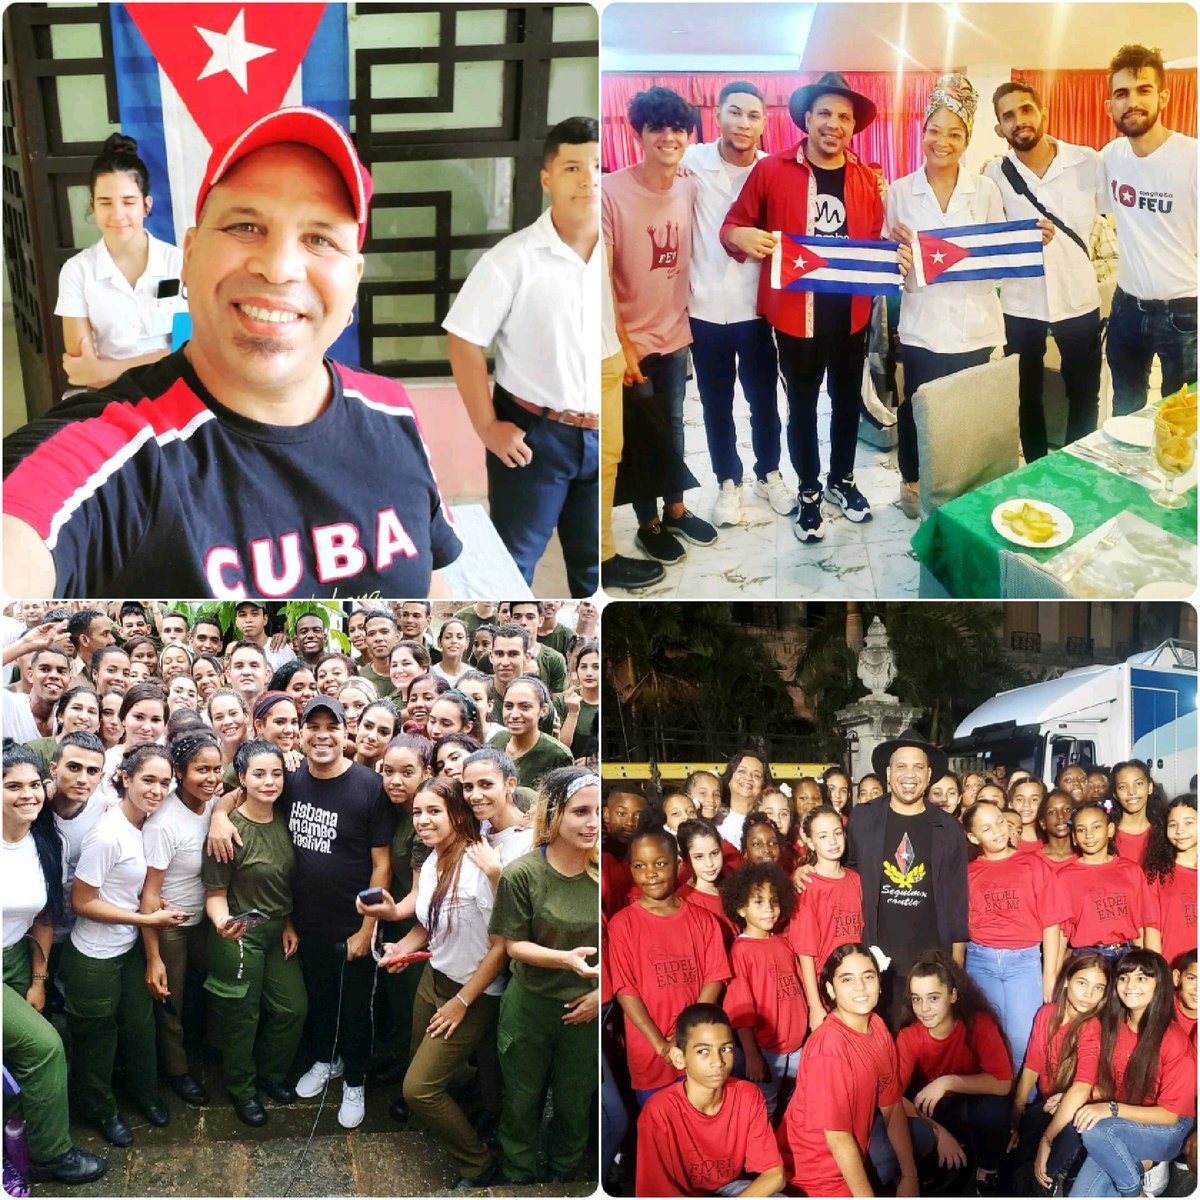 Pues aquí estoy con este montón de jóvenes super orgullosos de ser cubanos, e impugnando el Bloqueo a Cuba. 😍🇨🇺🇨🇺🇨🇺
#OrgulloCubano #JuventudCubana #ImpugnandoElBloqueo #Patriotismo